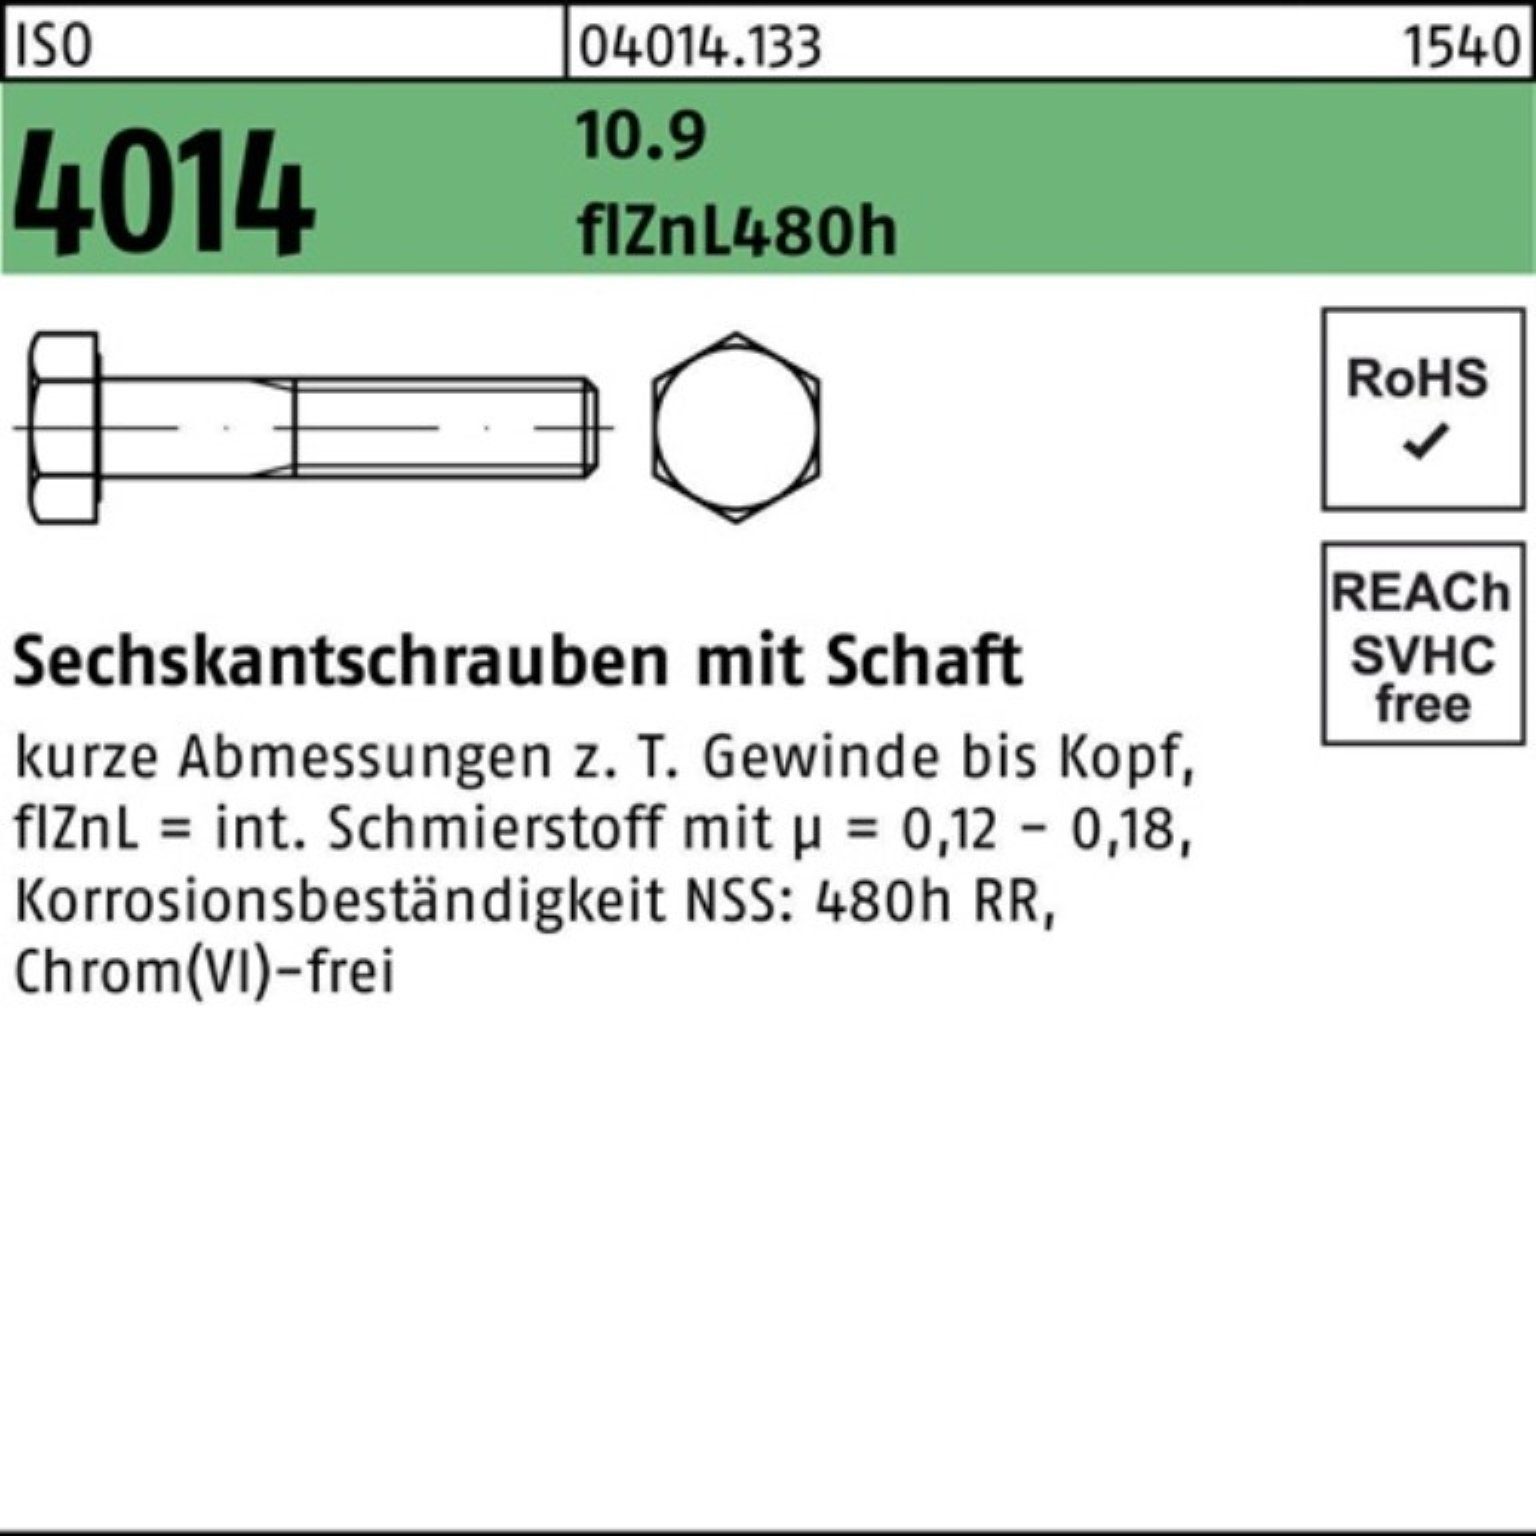 ISO 130 Schaft Sechskantschraube Bufab zinklamelle Sechskantschraube 100er 4014 10.9 M24x Pack